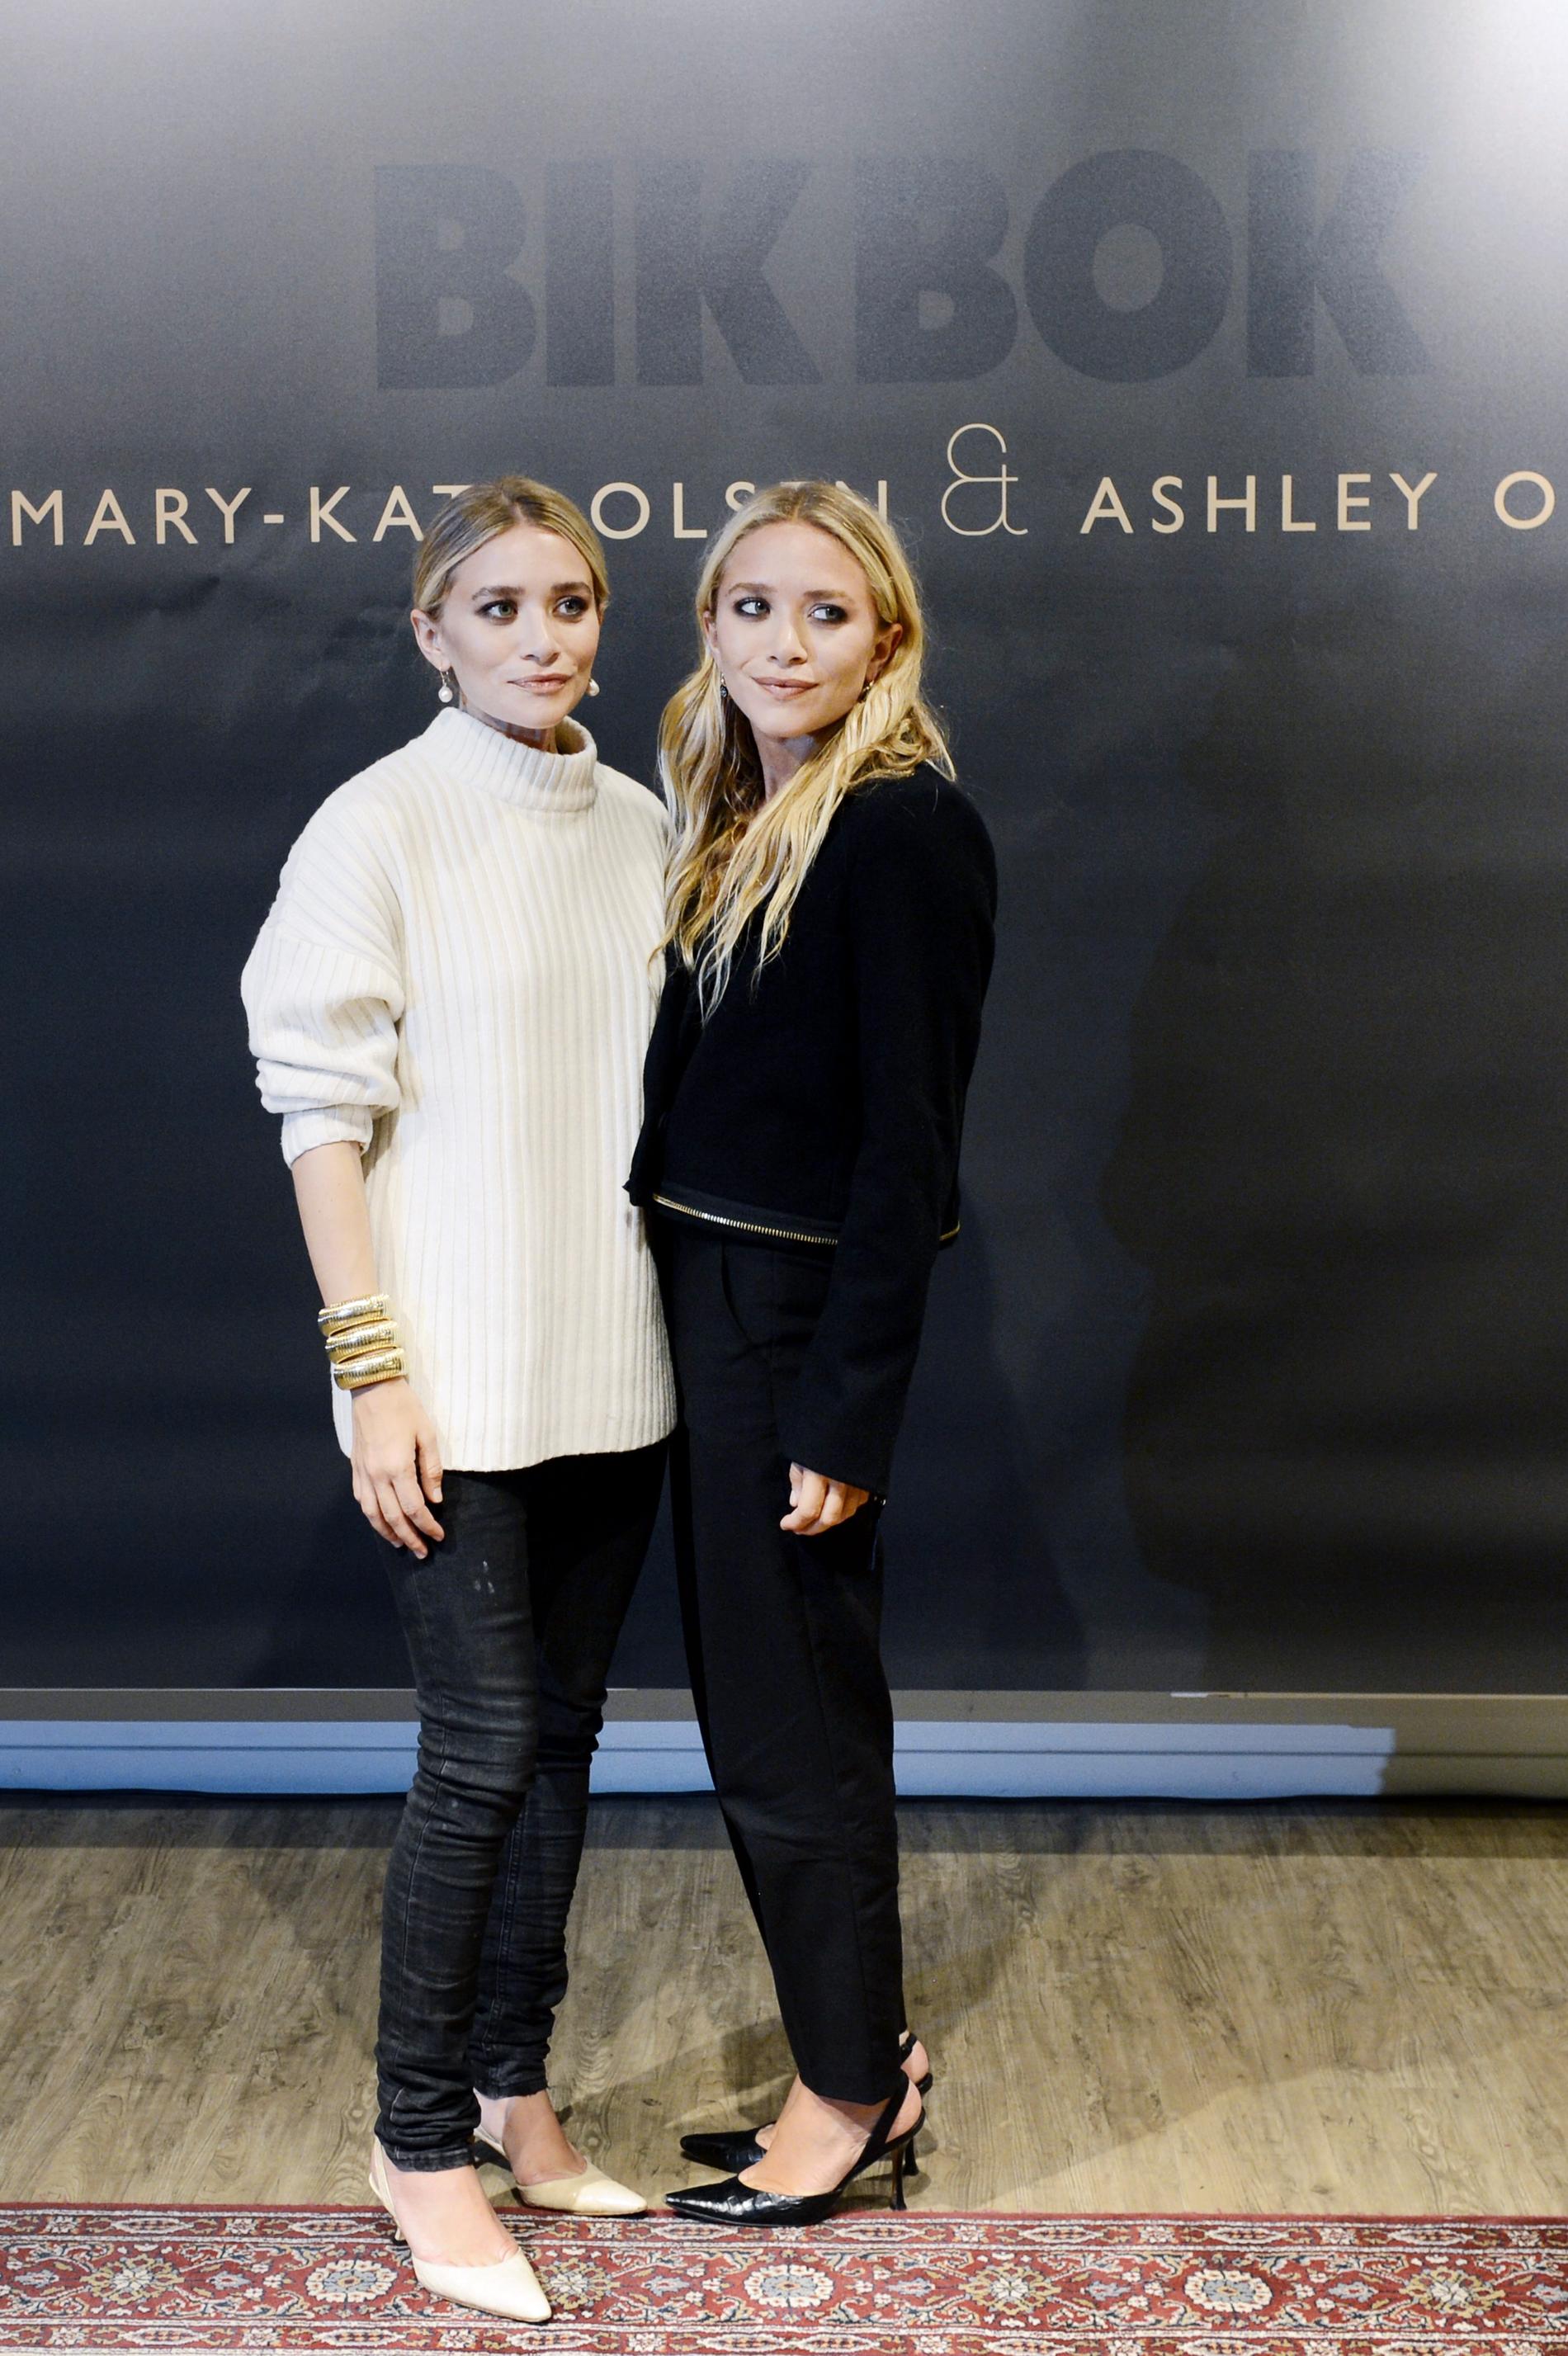 Systrarna Ashley Olsen och Mary-Kate Olsen i Stockholm för att lansera sitt designsamarbete för klädkedjan Bik Bok 2013.